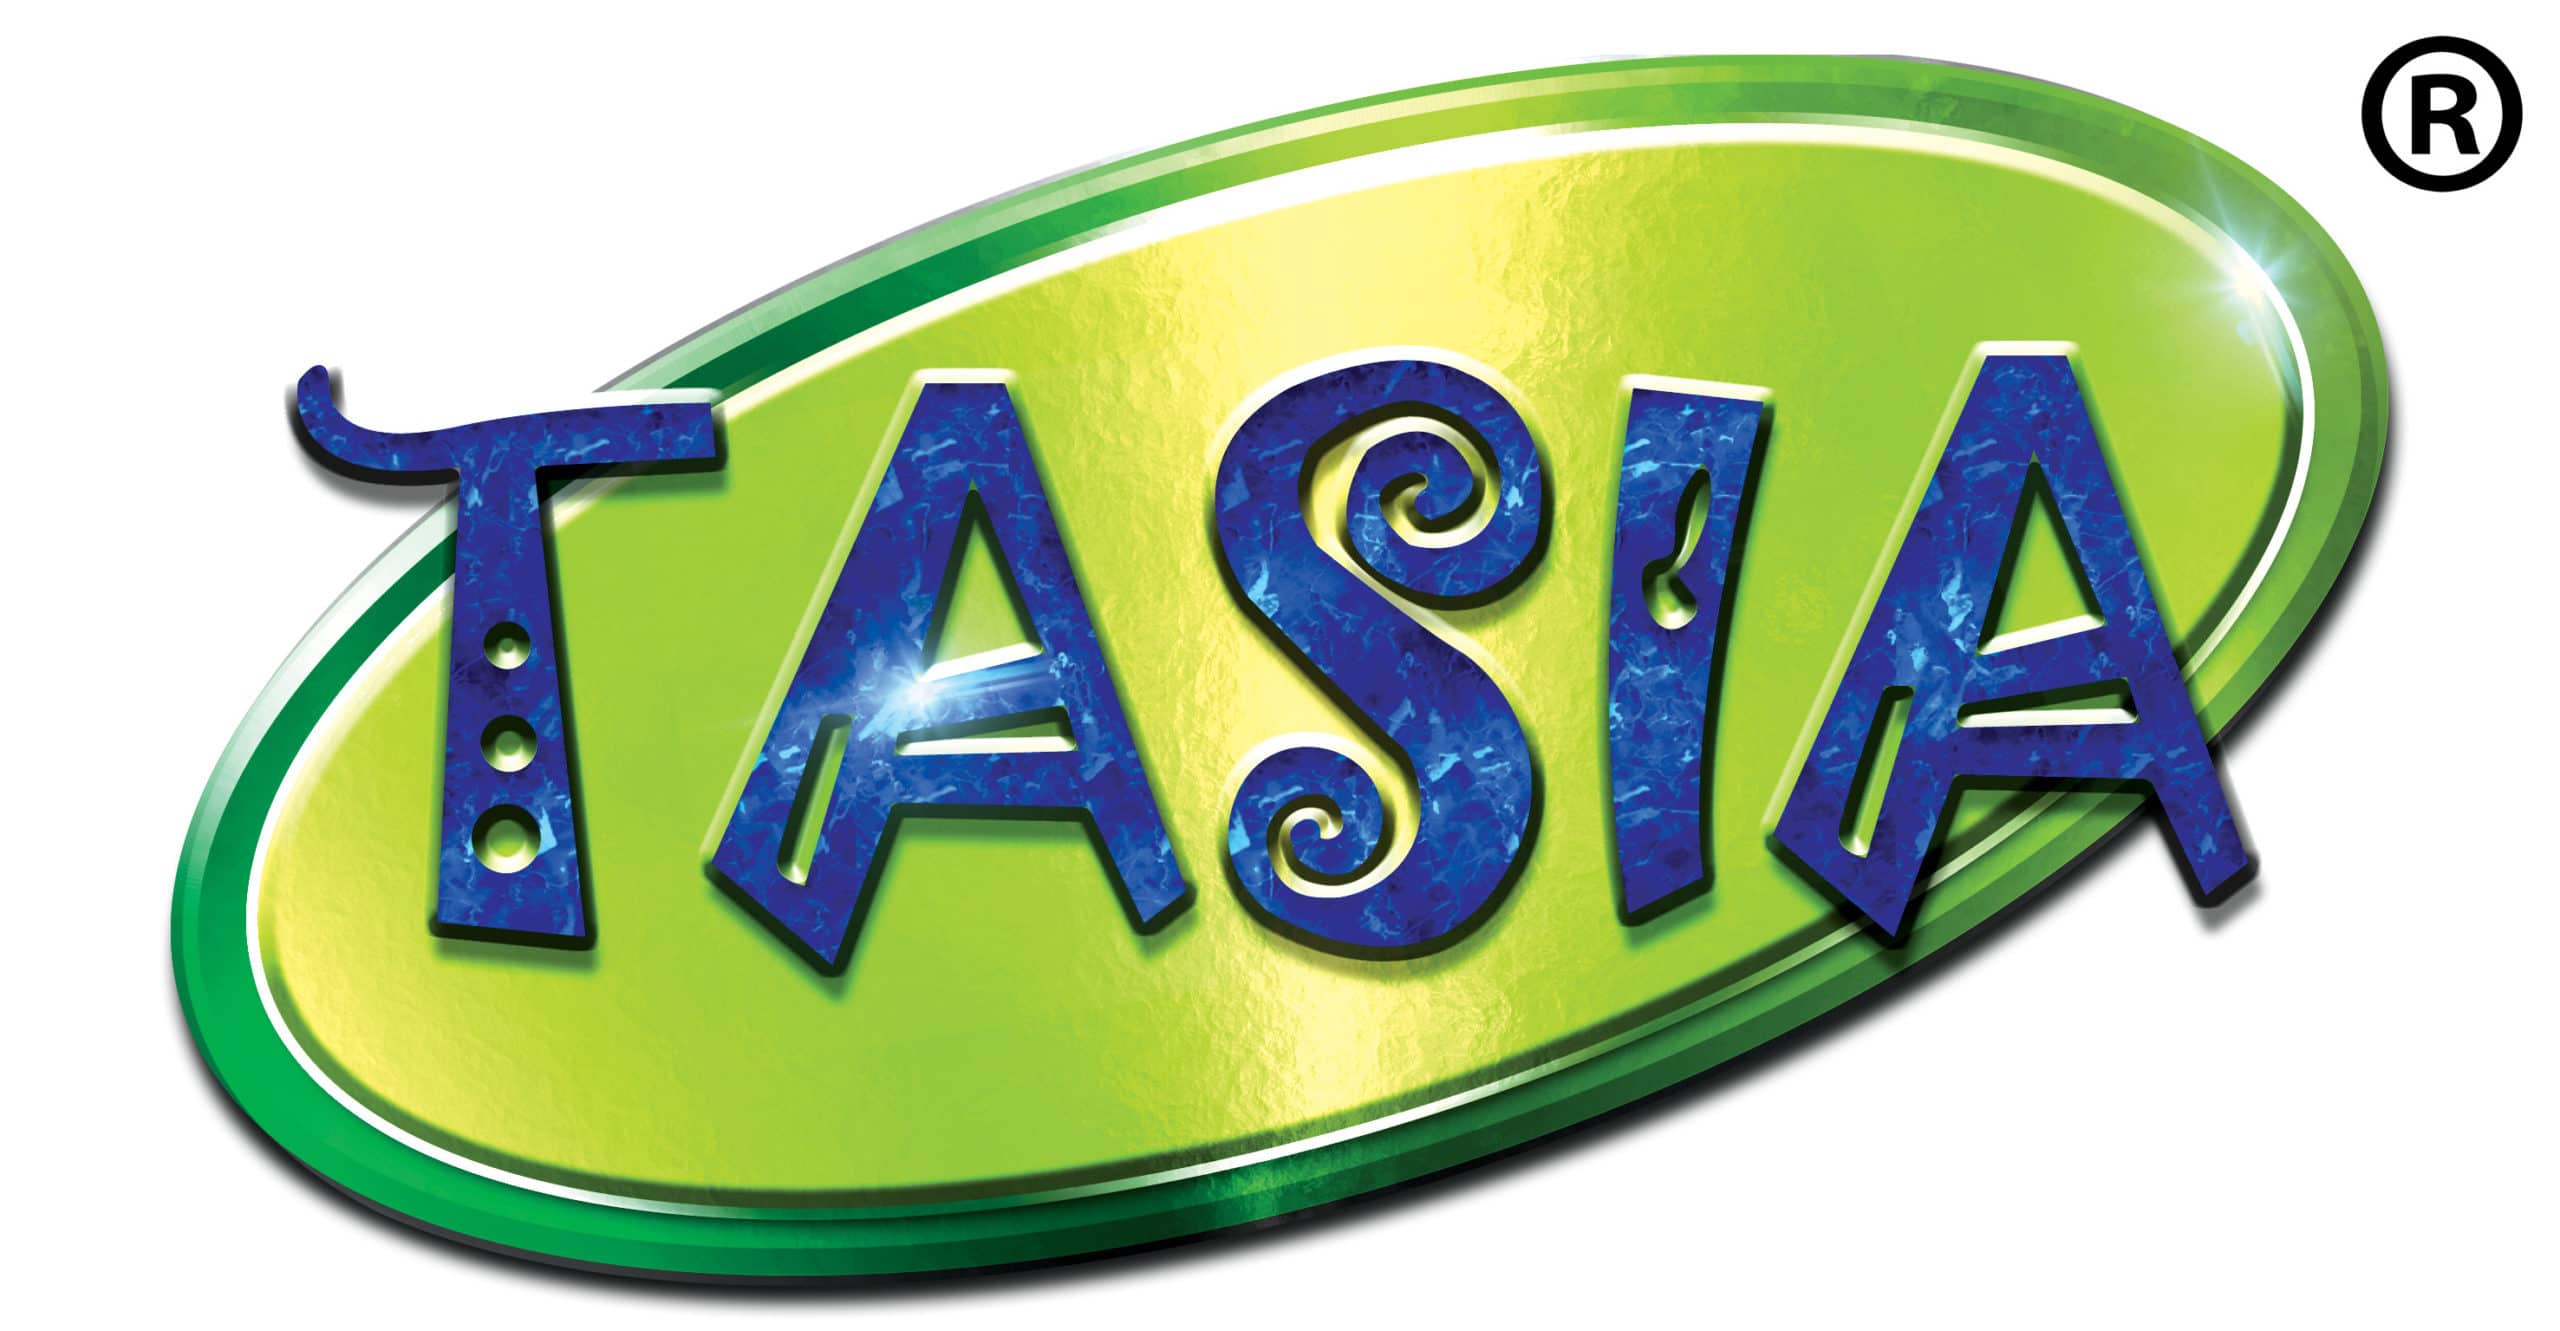 Tasia Egypt